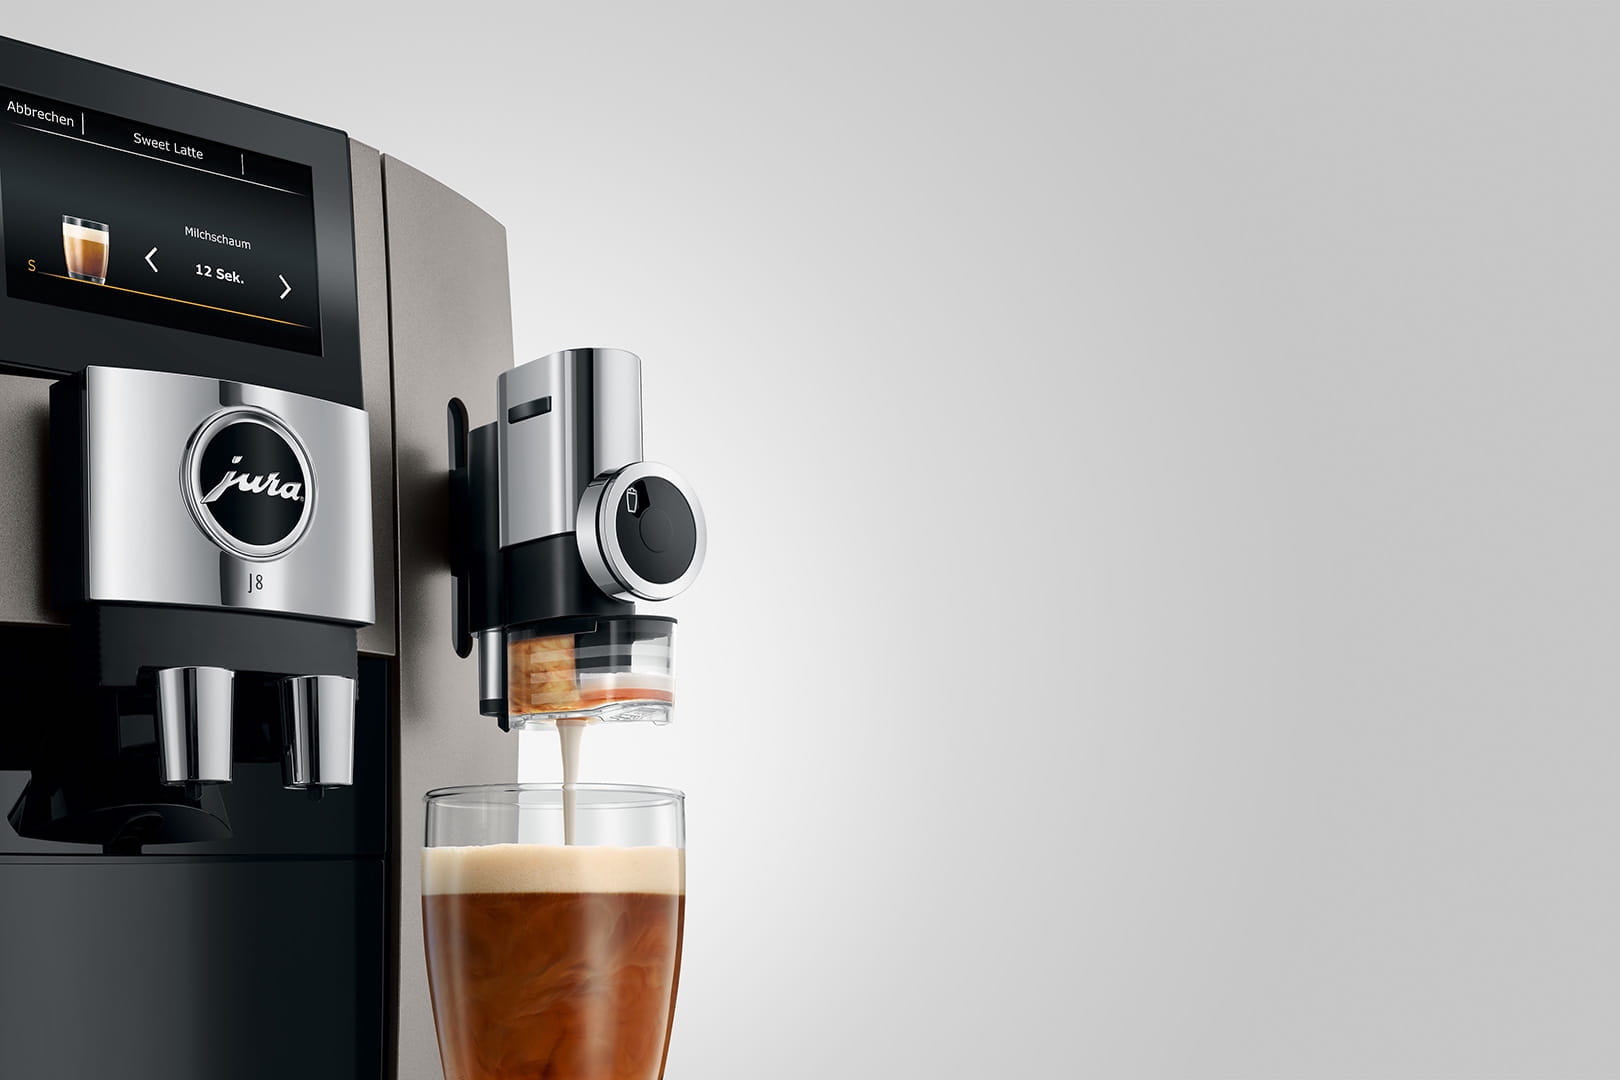 Jura J8 - Innovation in Caffeine Creation